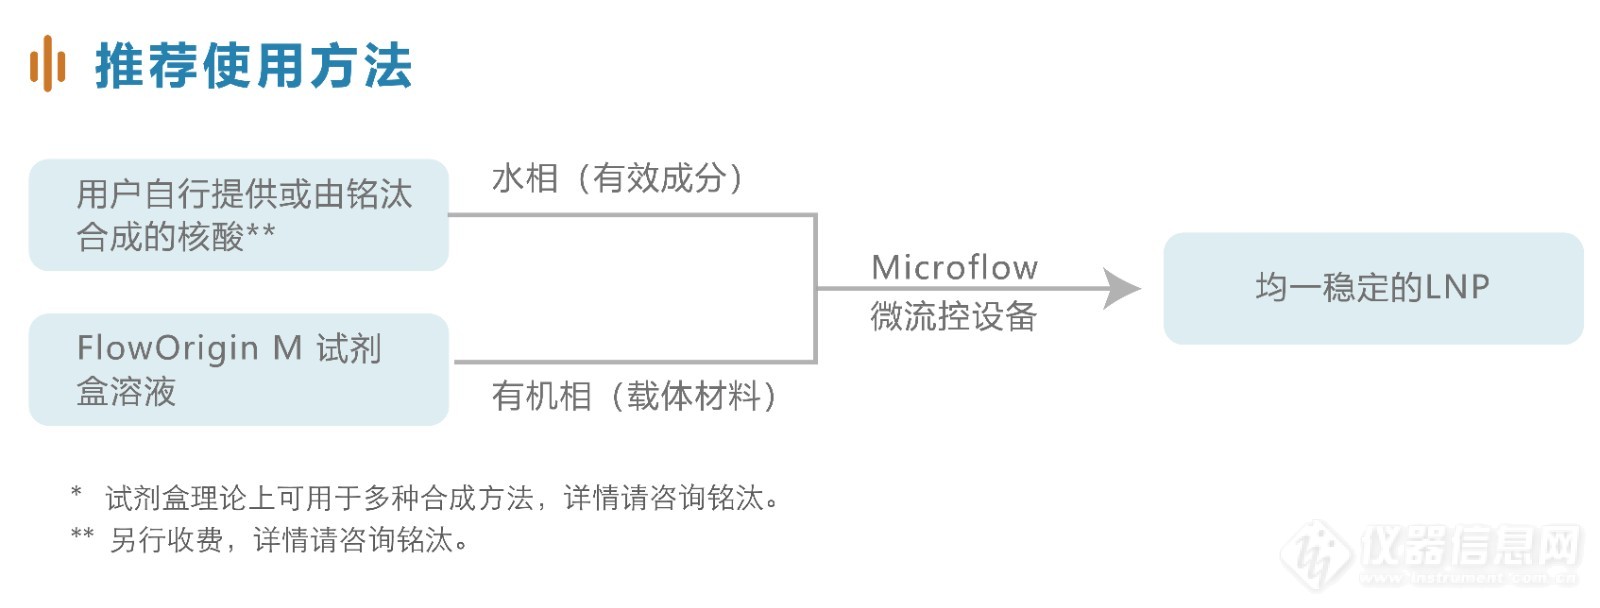 铭汰 FlowOrigin M 试剂盒-04.jpg